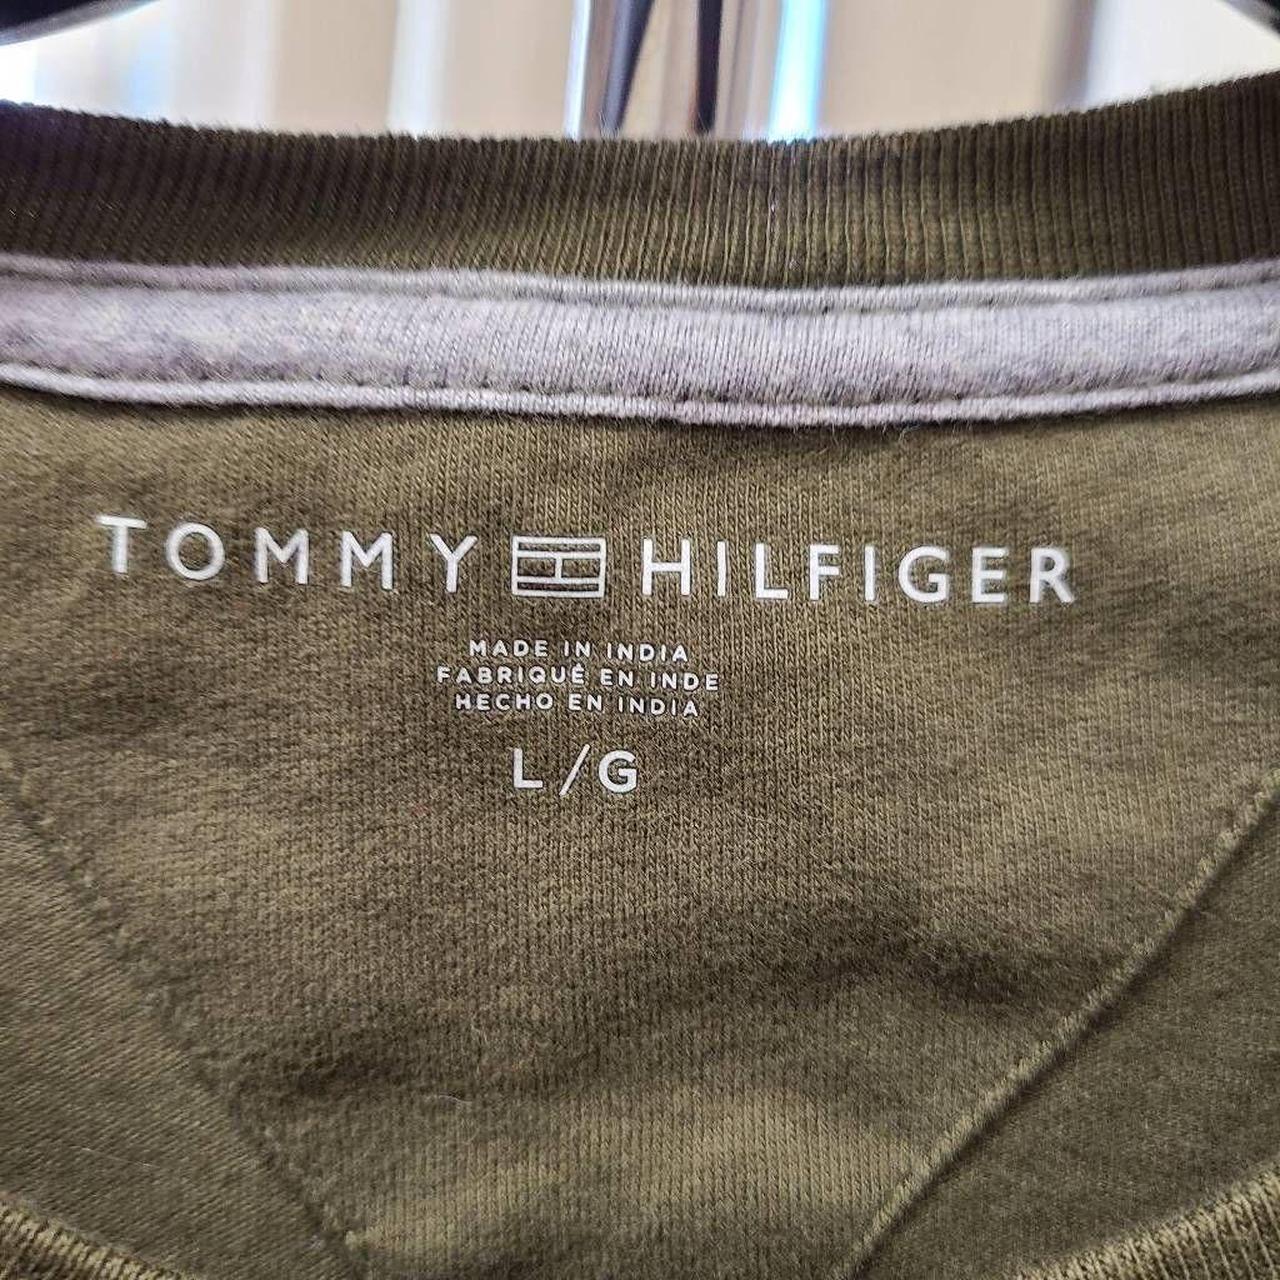 Large Tommy Hilfiger Cropped T-Shirt. Olive green, - Depop